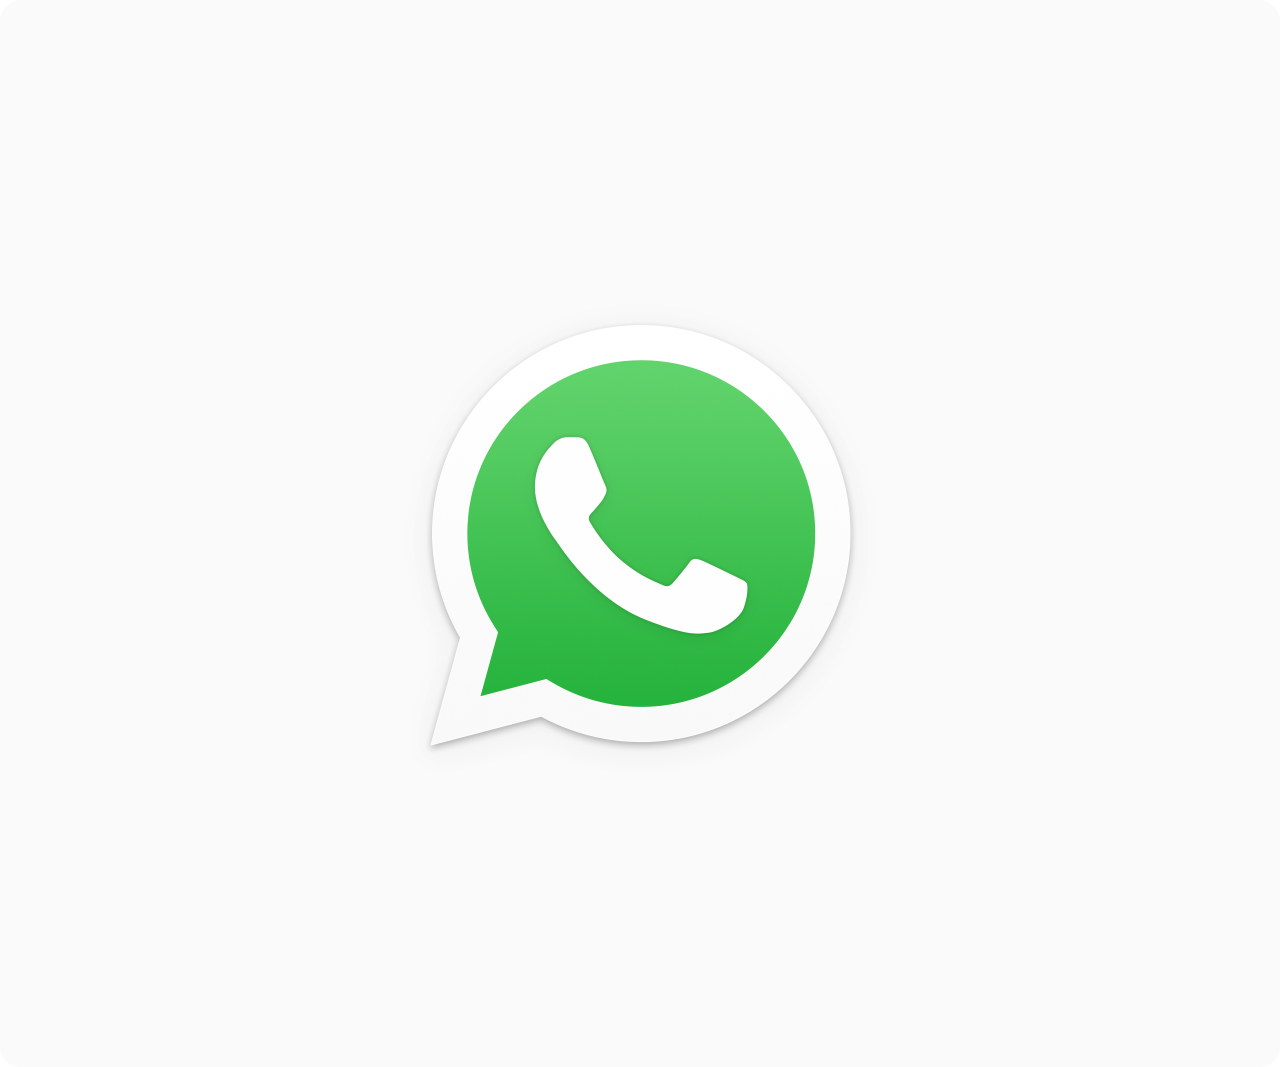 Newsletter-Versand über WhatsApp: Zulässigkeitsvoraussetzungen und ihre Umsetzung nach der DSGVO